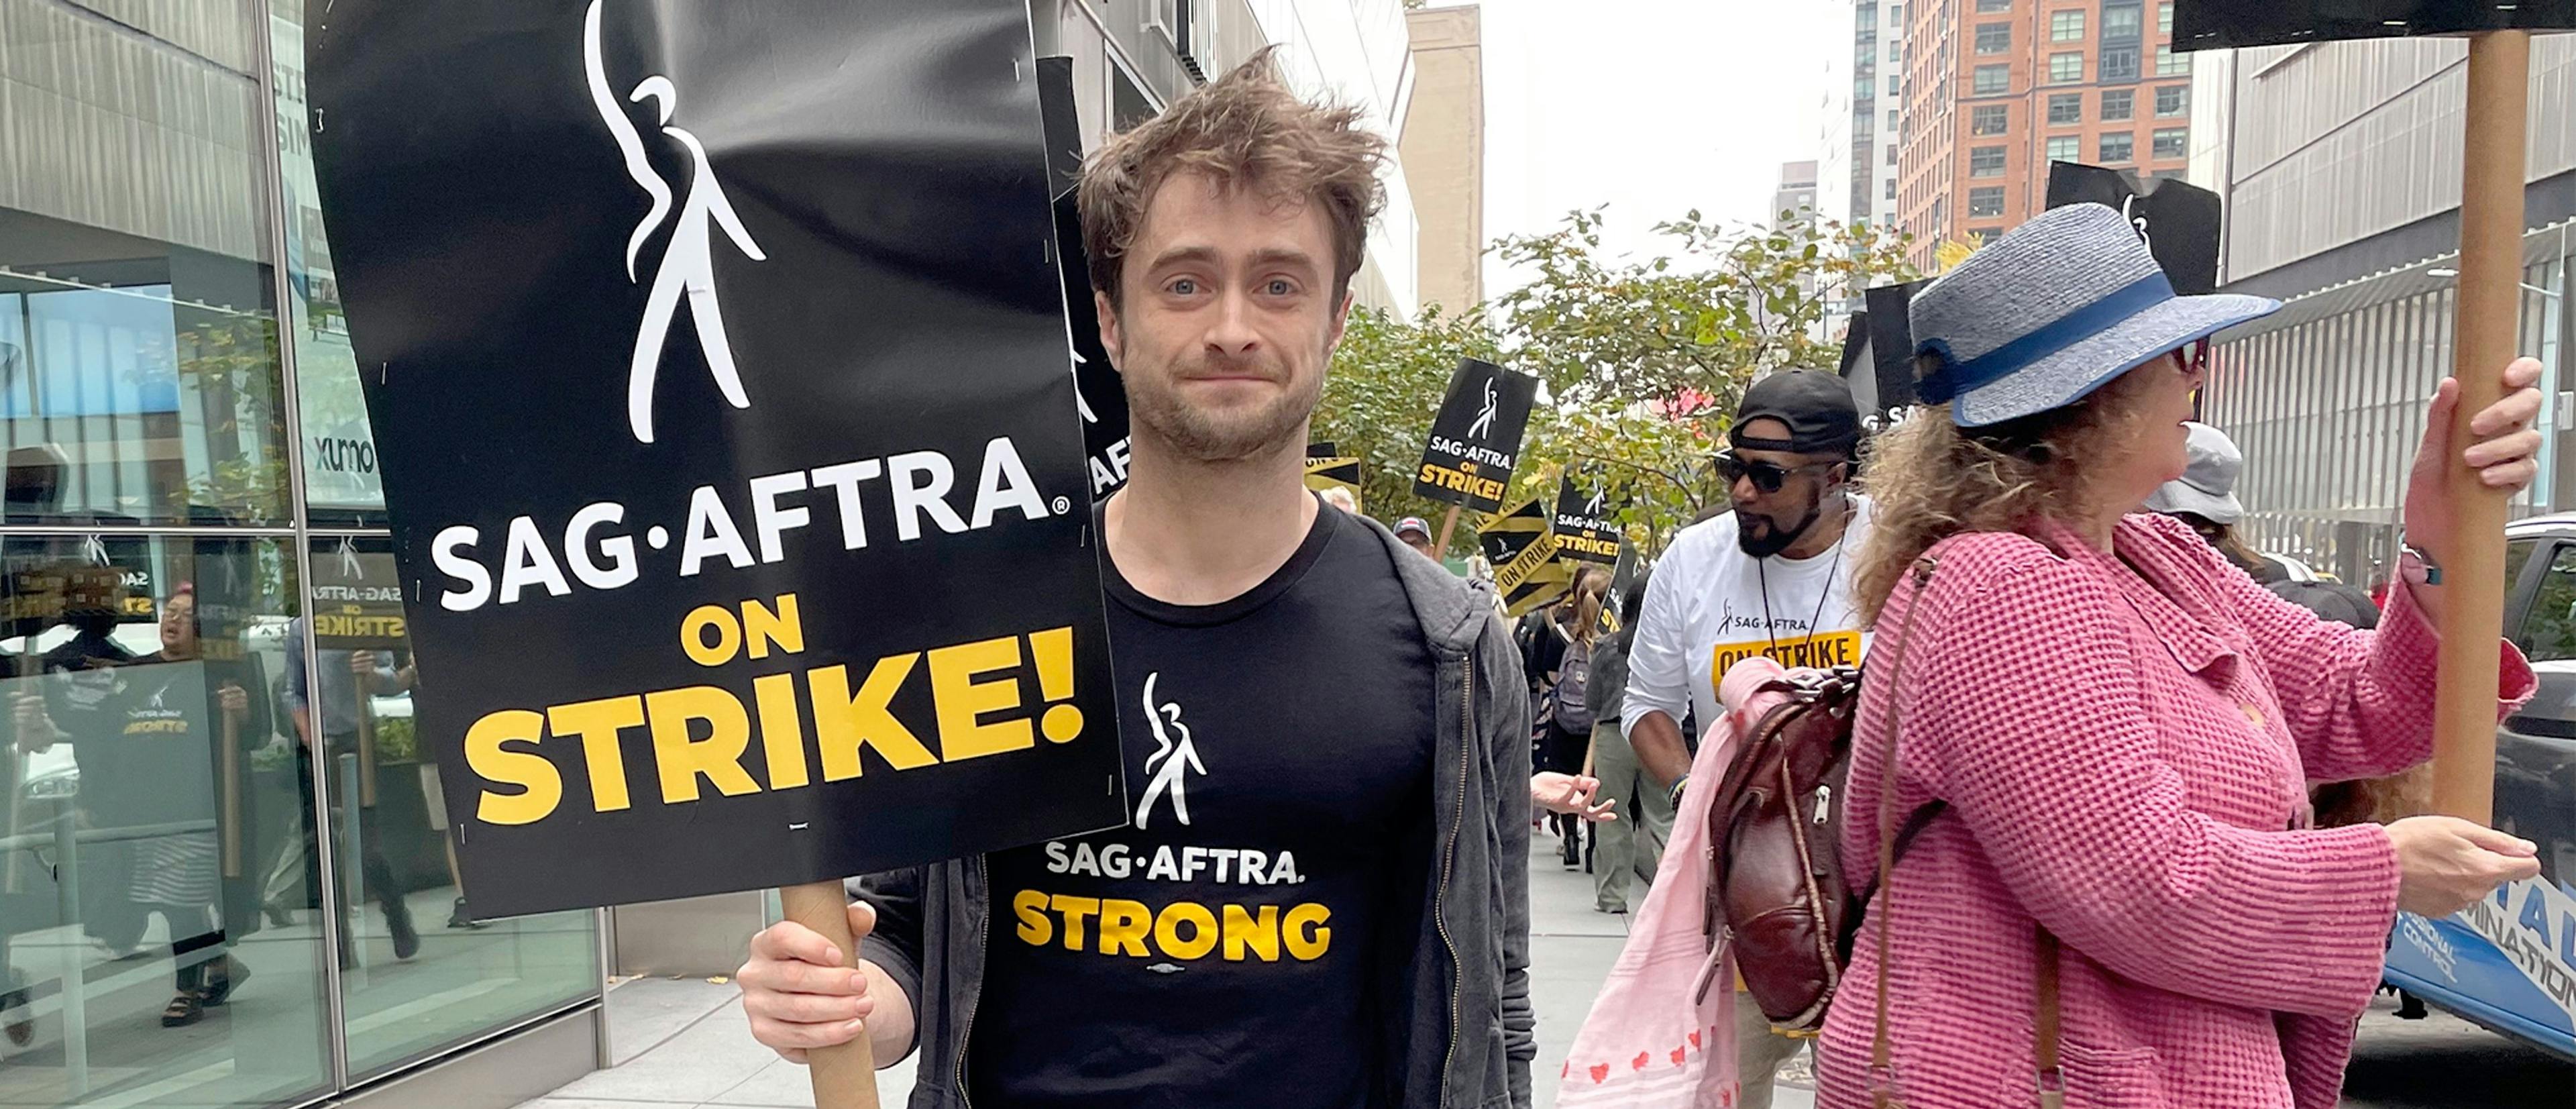 El actor Daniel Radcliffe asistiendo a un piquete de la huelga del actores durante el último fin de semana de octubre